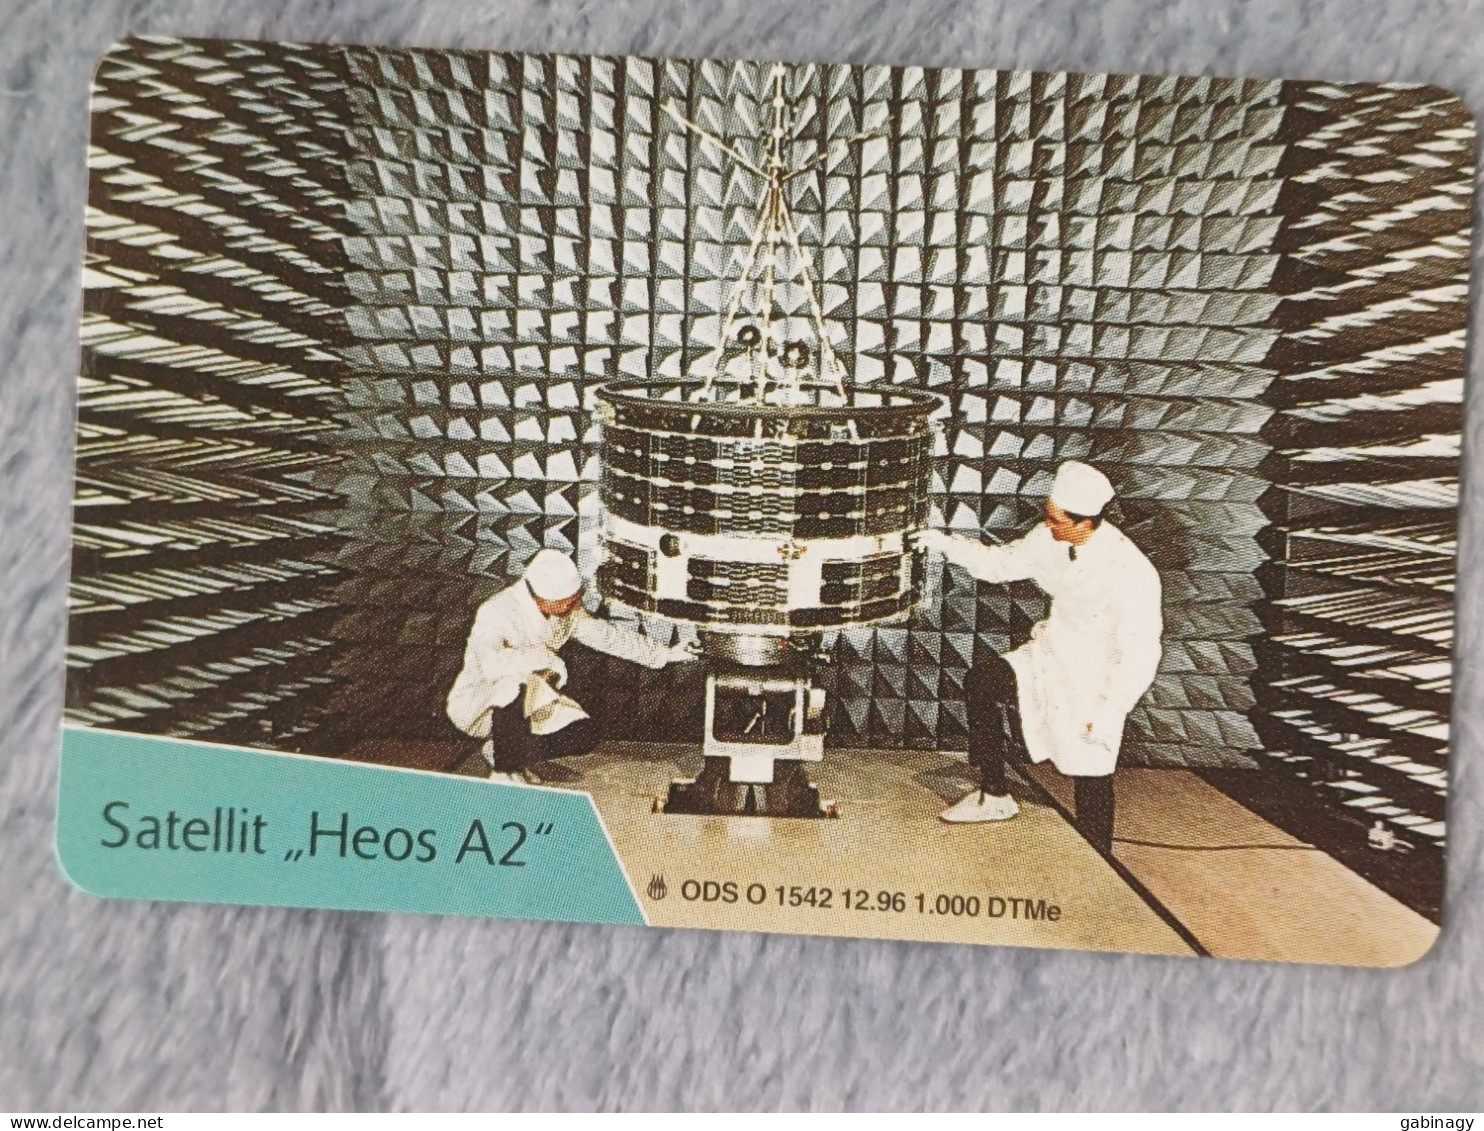 GERMANY-1080 - O 1542 - Eroberung Des Weltraums: Satellit "Heos A2" - SPACE - 1.000ex. - O-Series: Kundenserie Vom Sammlerservice Ausgeschlossen